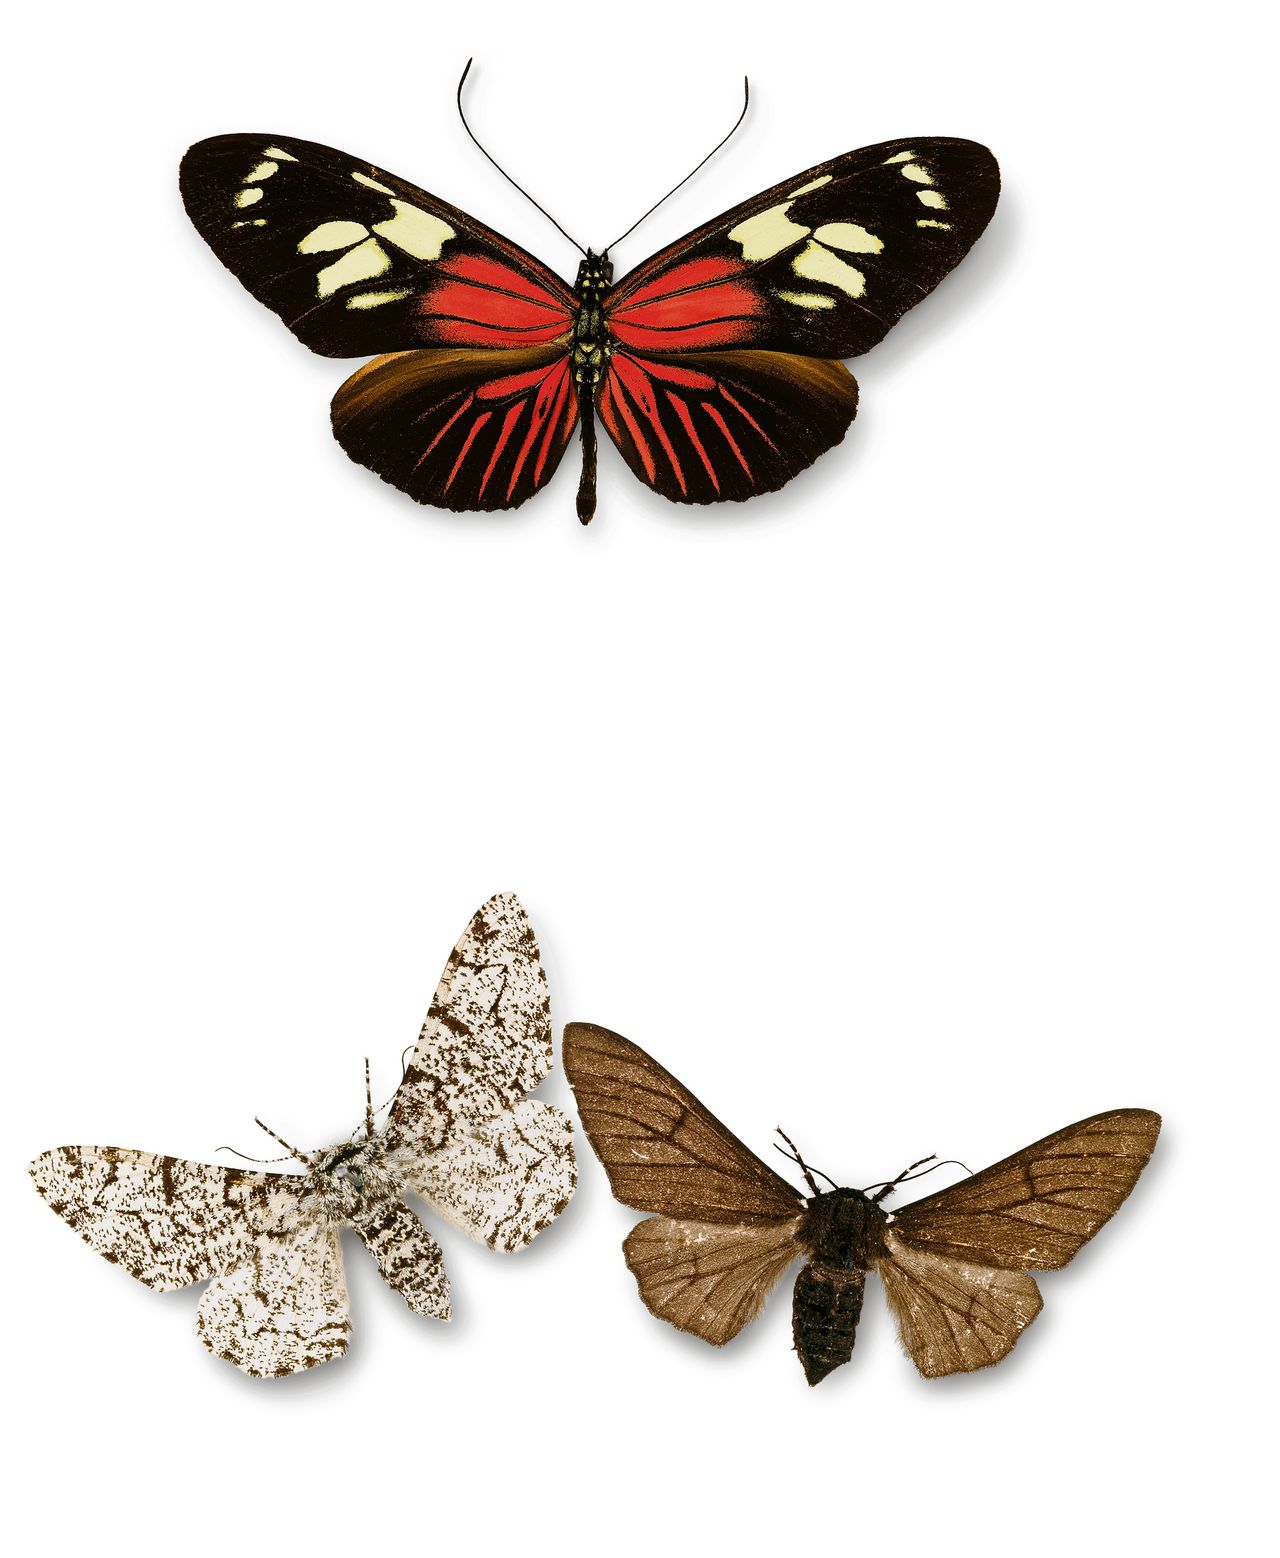 De vlinder Heliconius burneyi catharinae.Berkenspanners